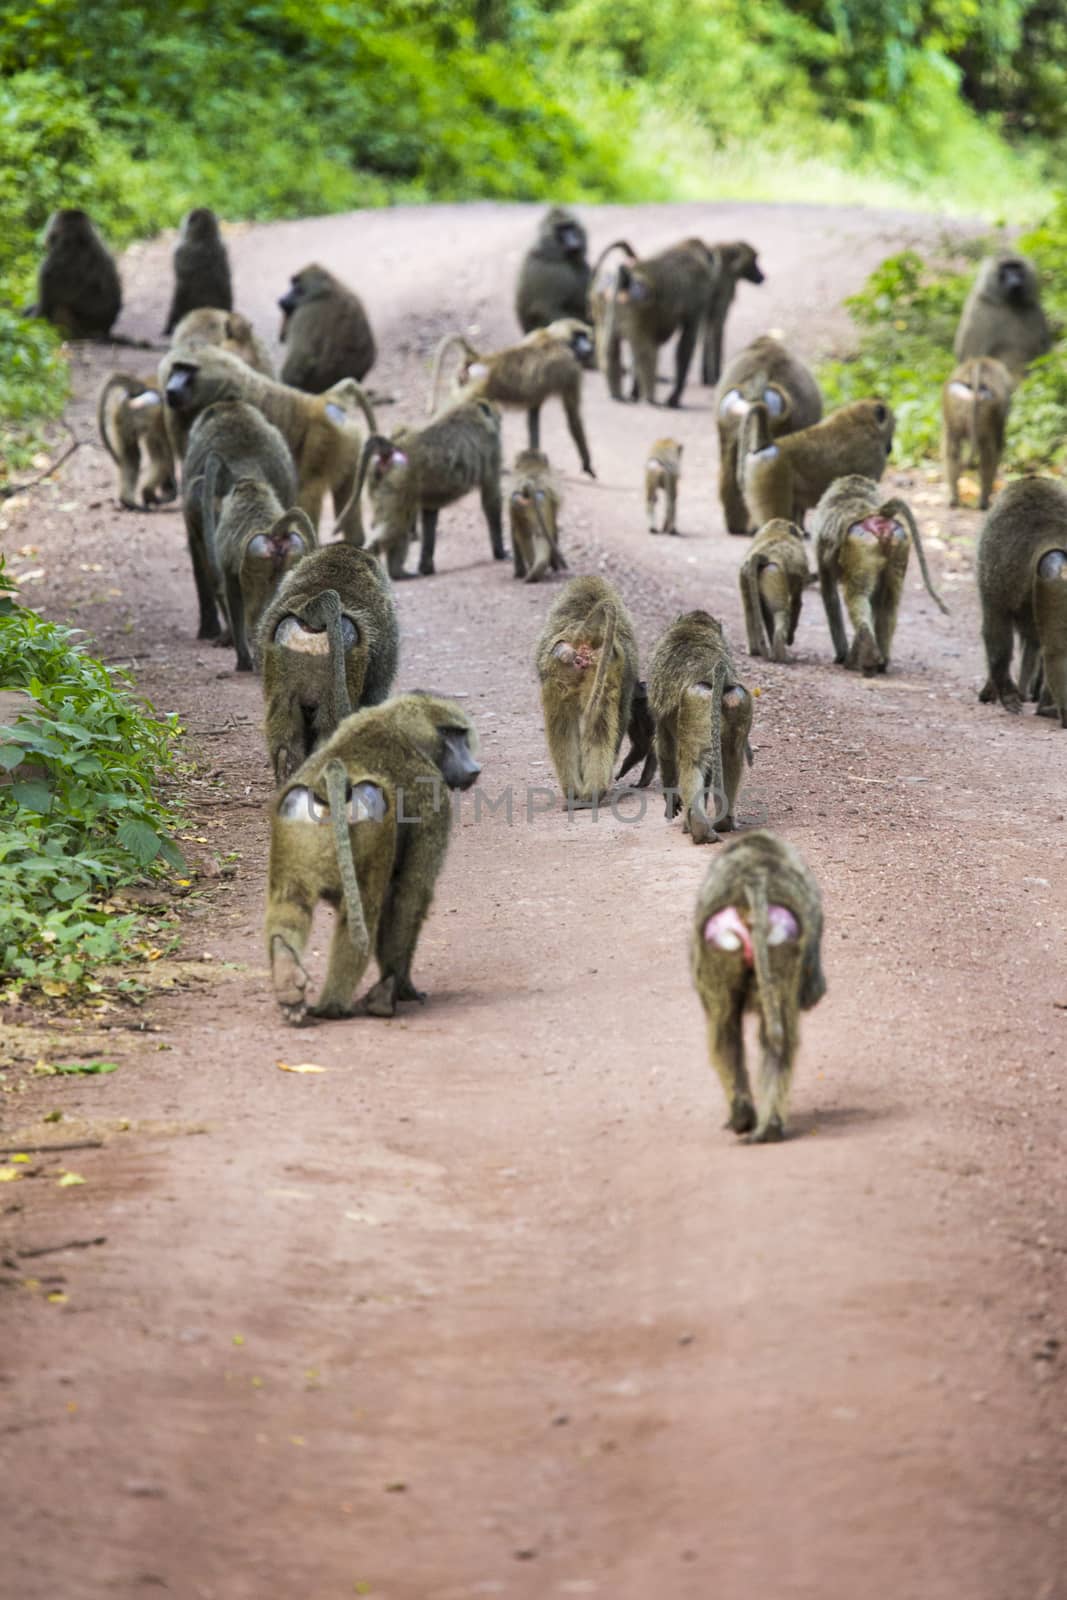 Baboon - Tarangire National Park - Wildlife Reserve in Tanzania, by mariusz_prusaczyk